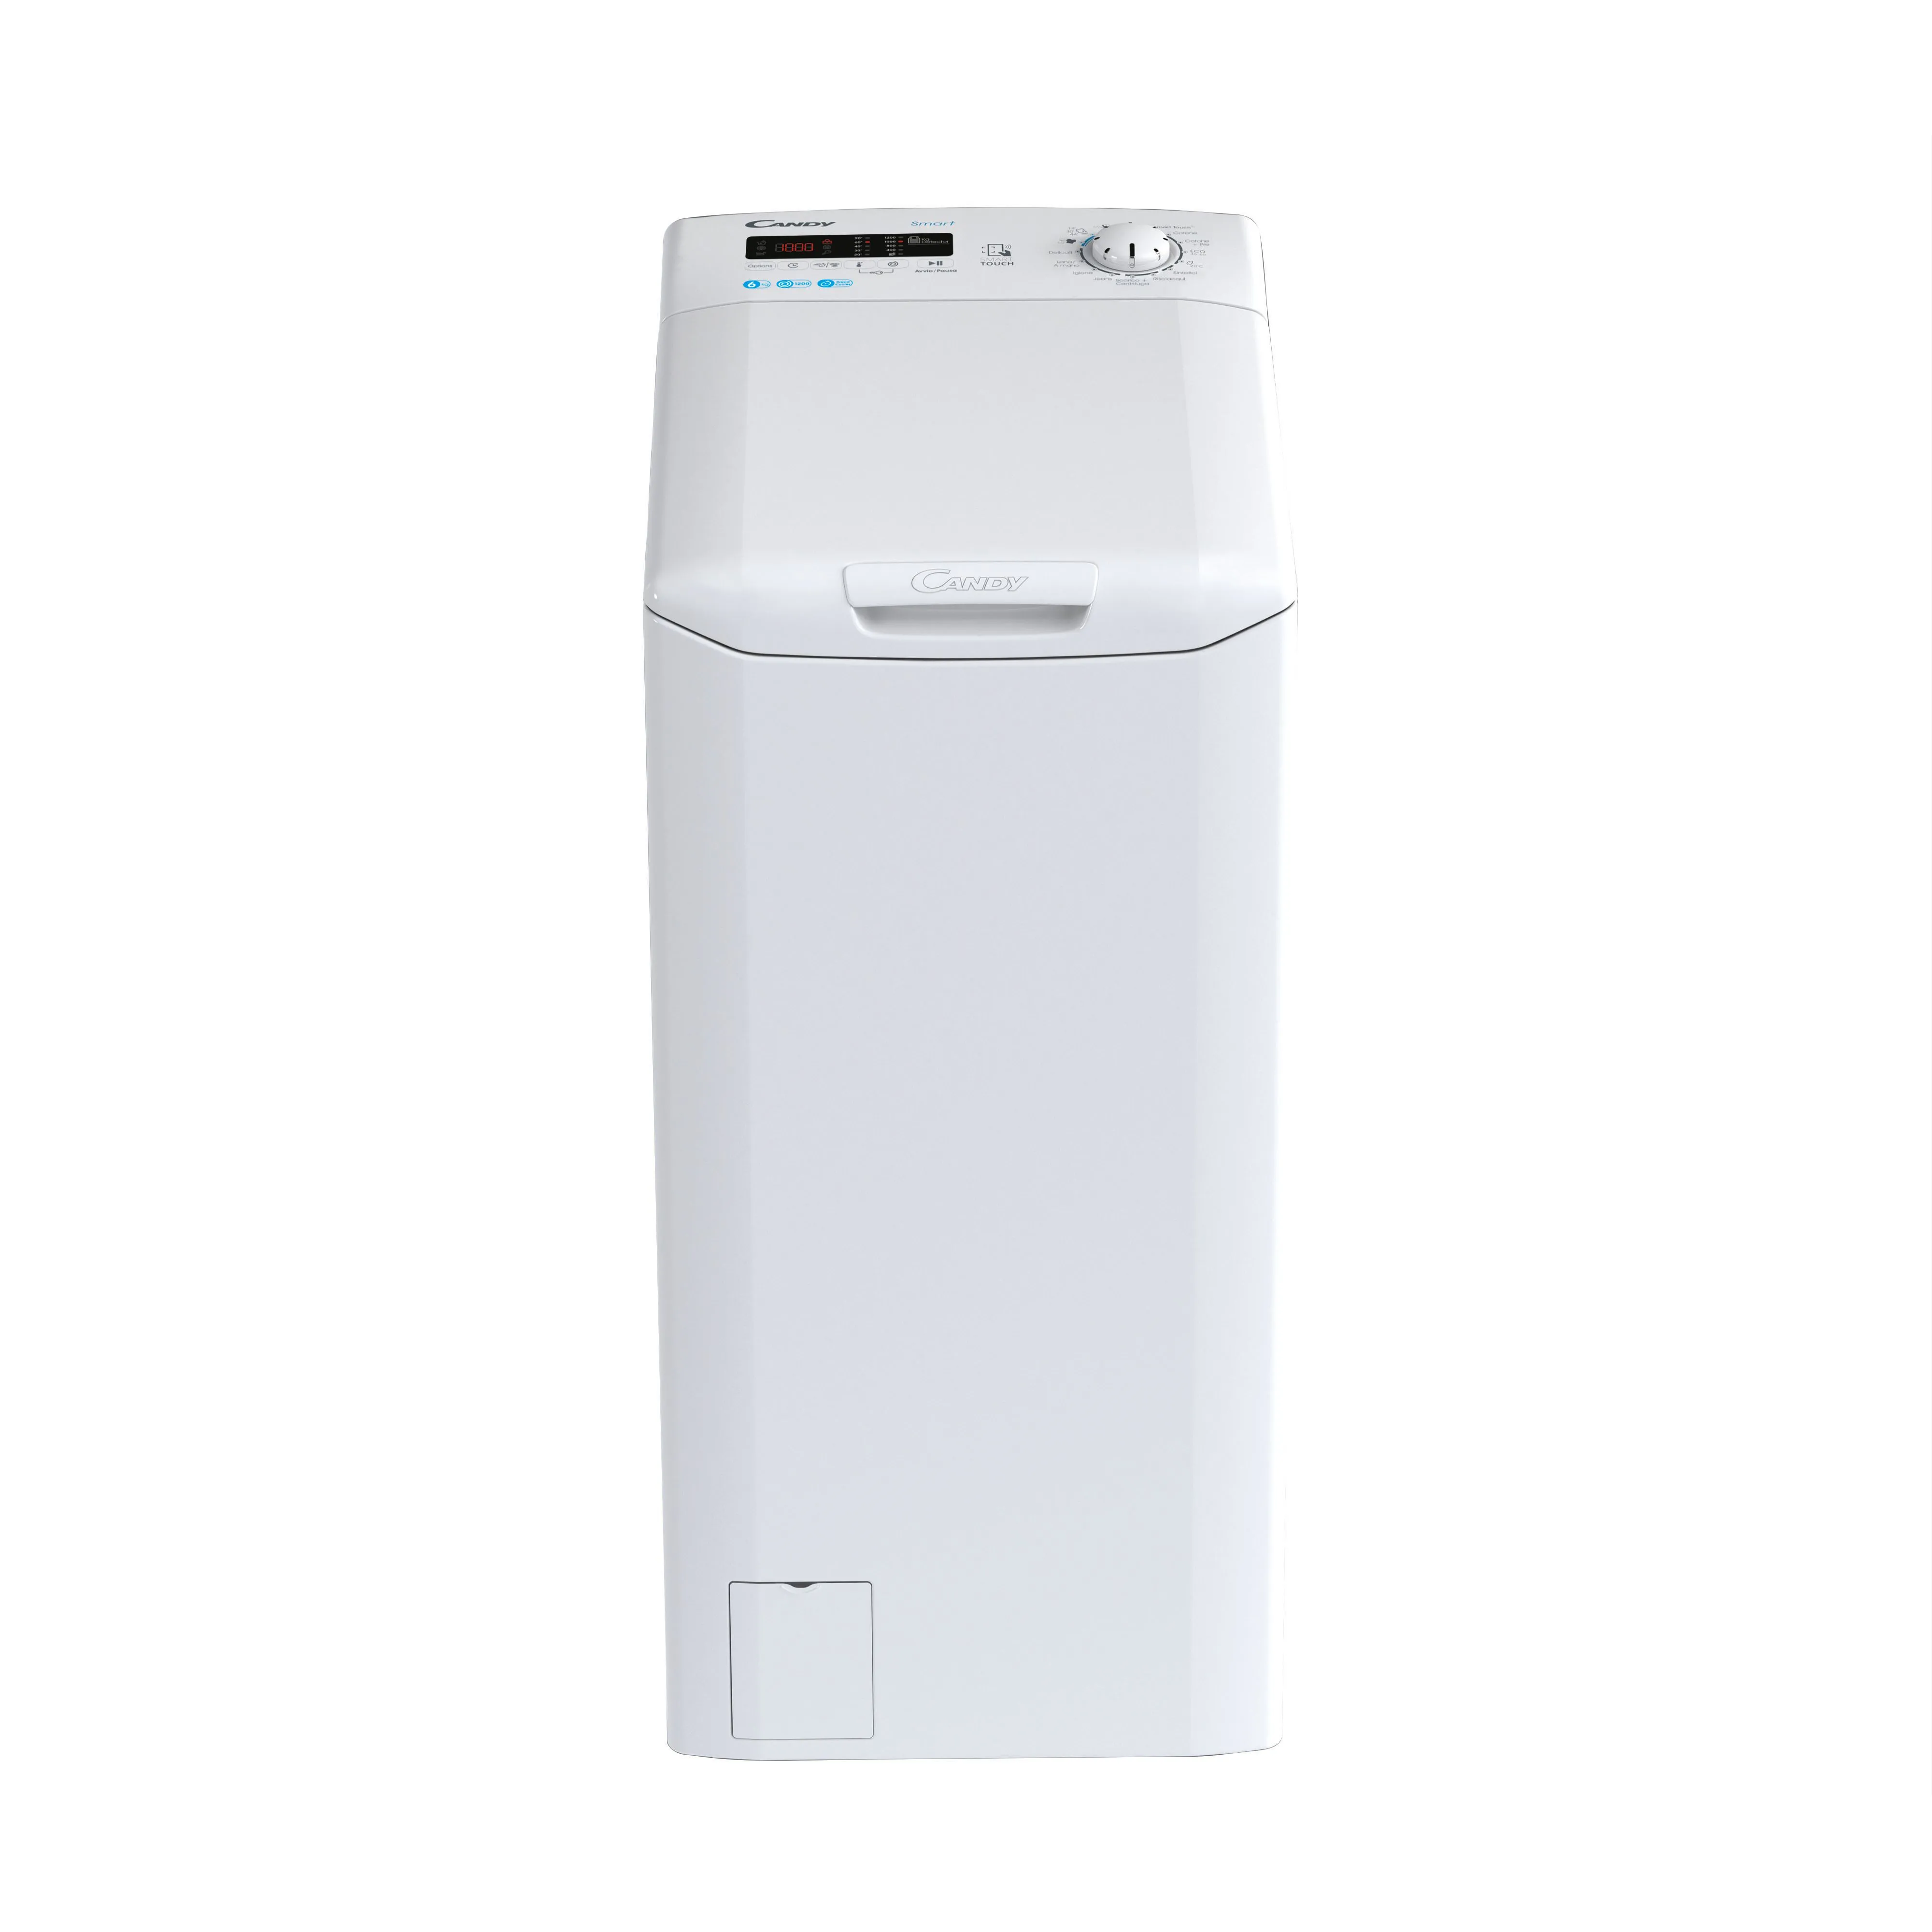  Smart CST 262D3/1-11 lavatrice Caricamento dall'alto 6 kg 1200 Giri/min Bianco